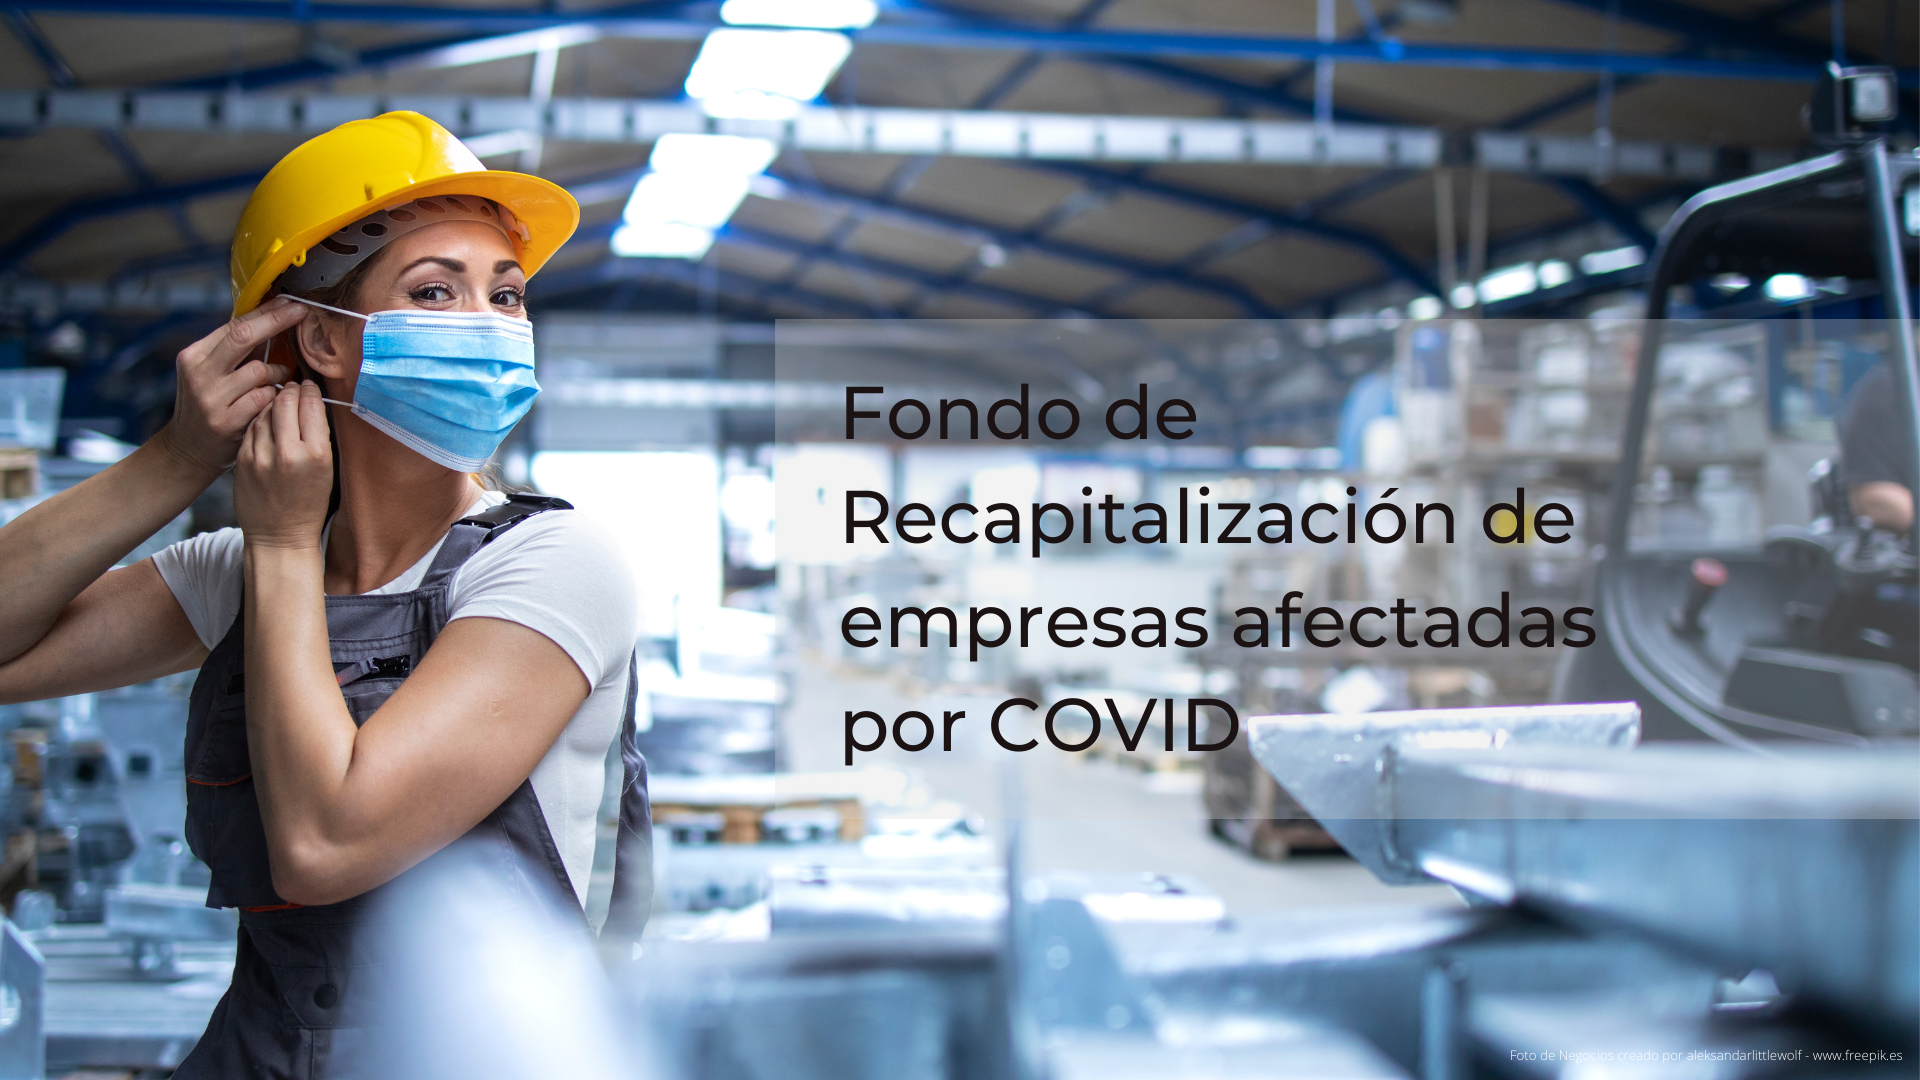 Imagen del nuevo Fondo de recapitalización de empresas afectadas por COVID